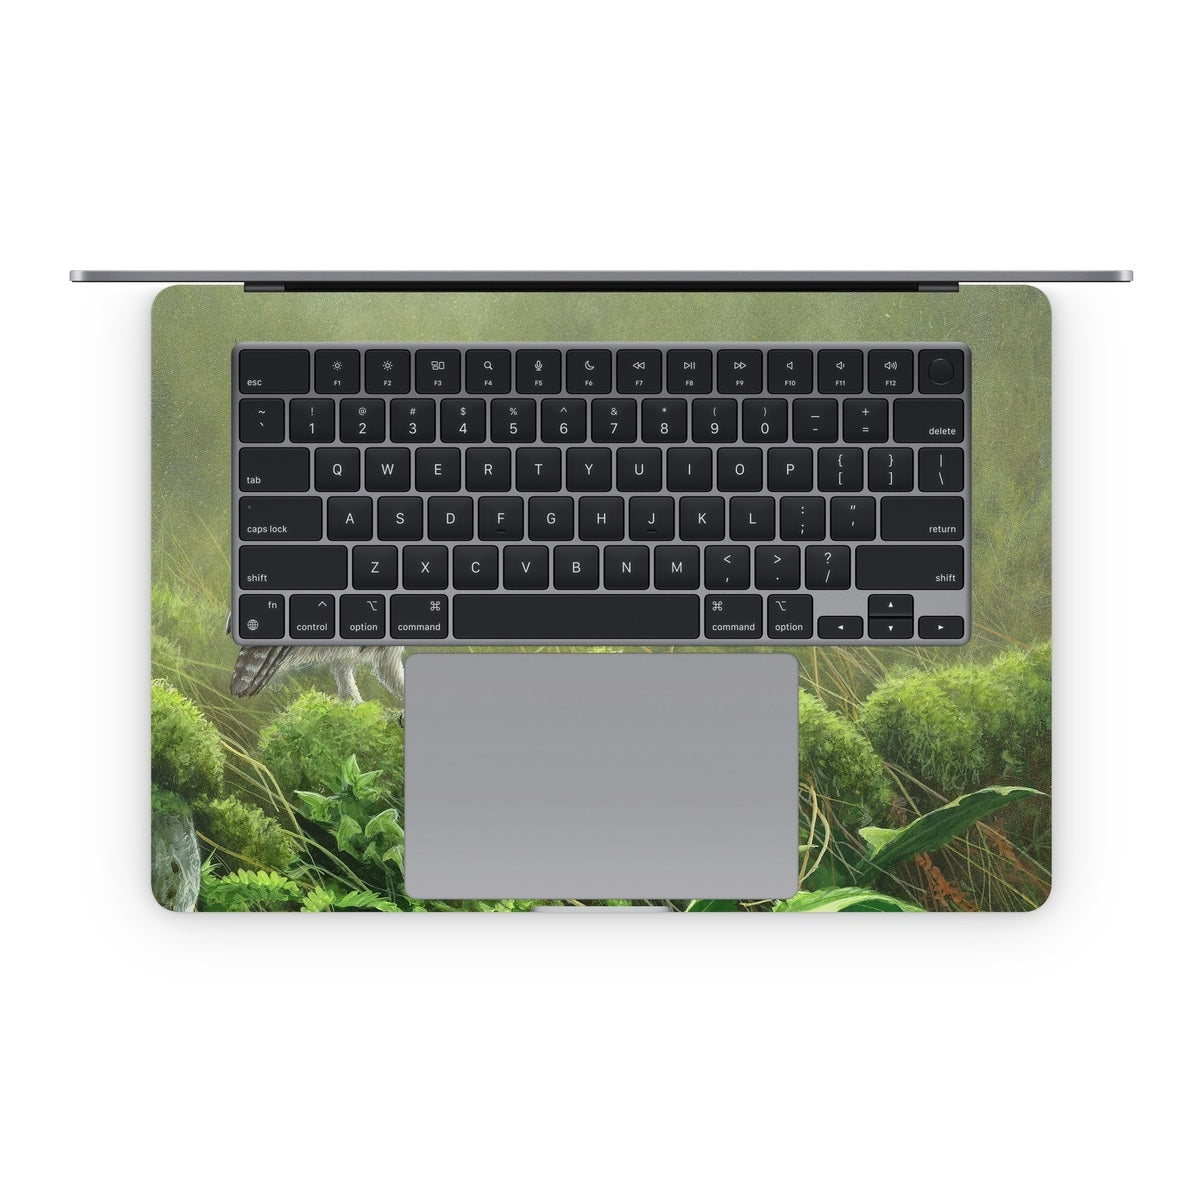 Tumbledown - Apple MacBook Skin